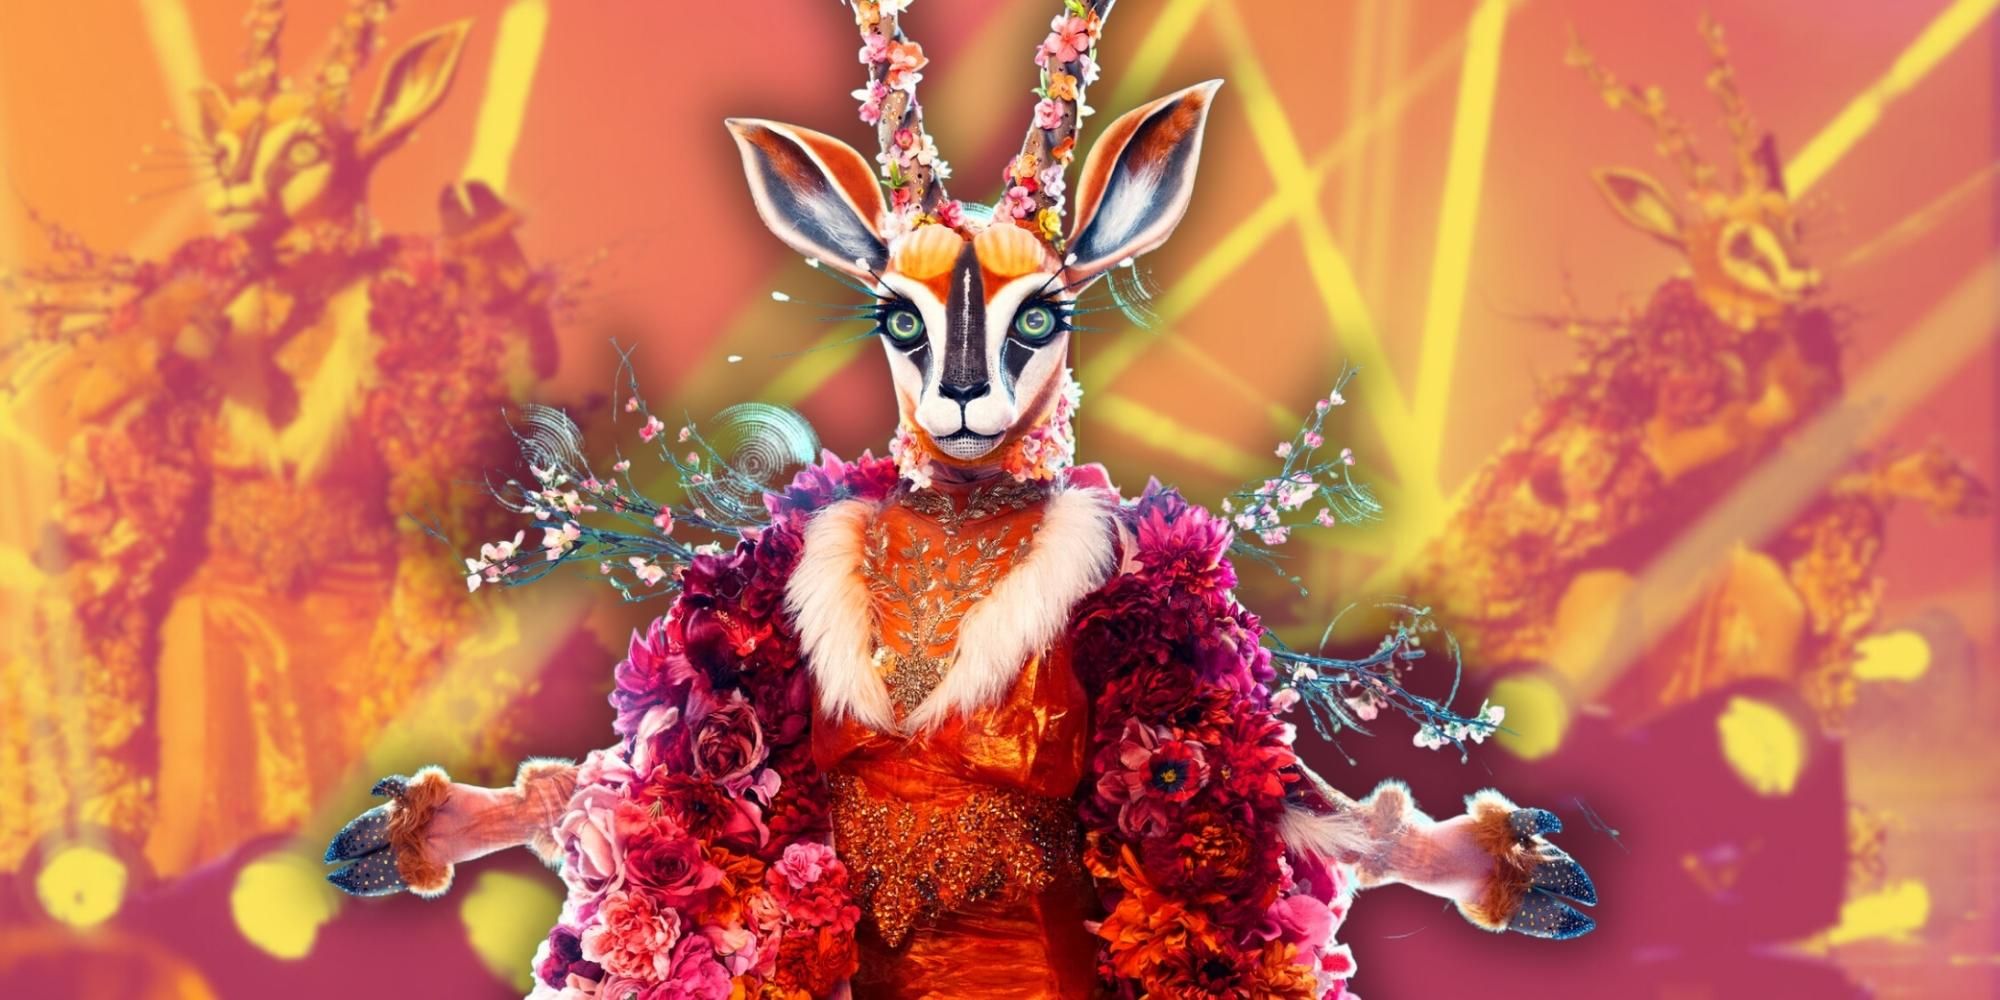 El cantante enmascarado: predicción y pistas de la identidad de Gazelle